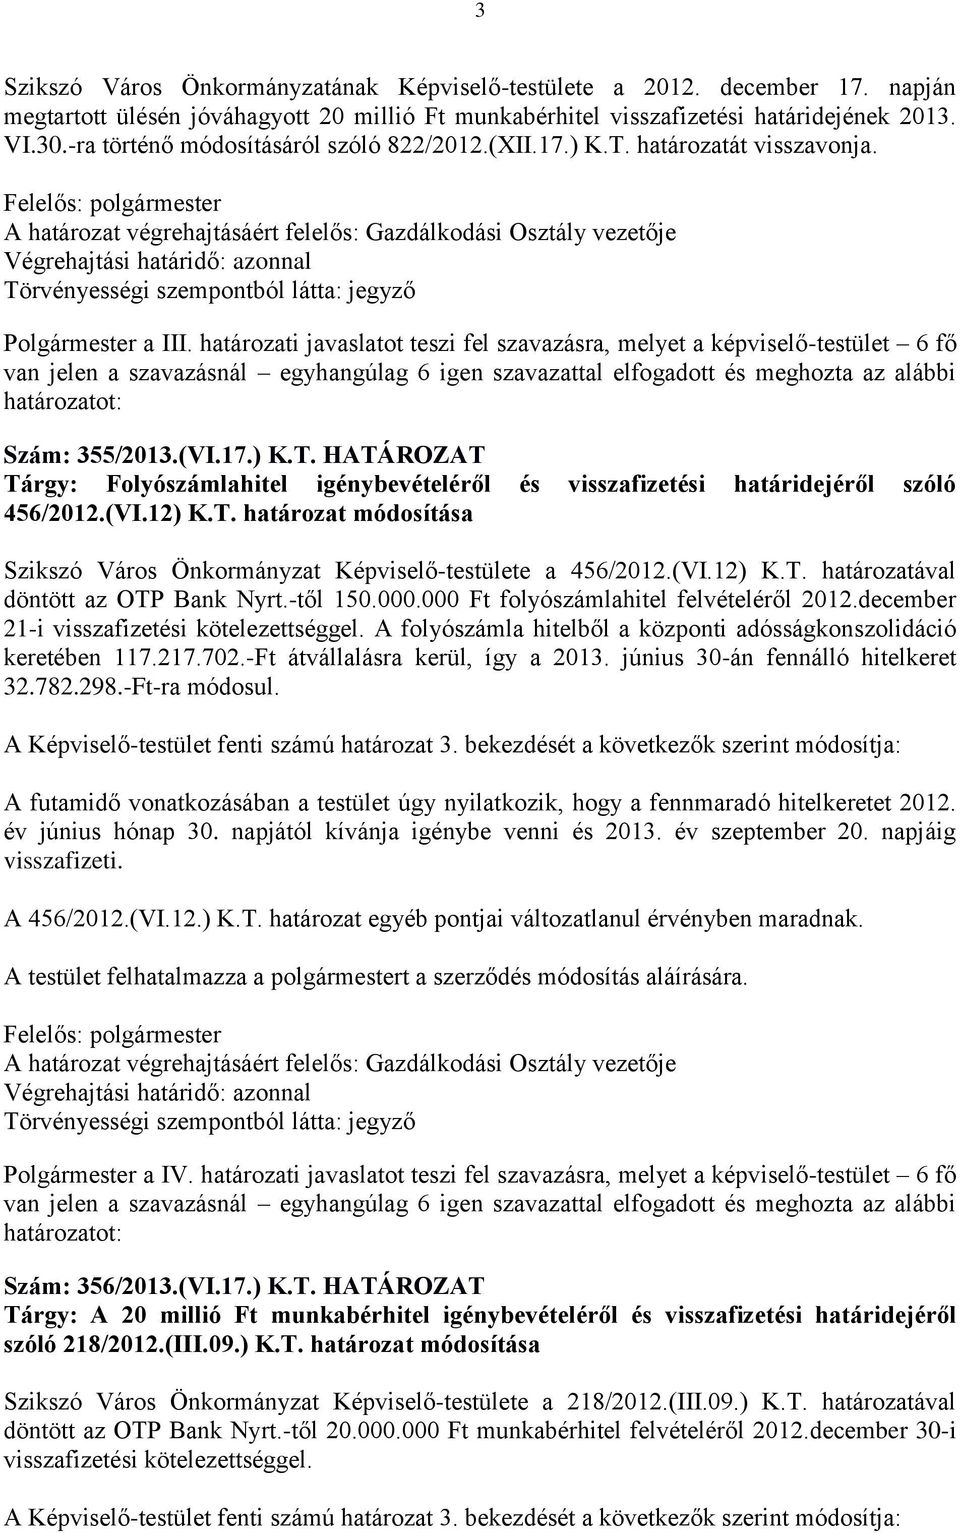 (VI.12) K.T. határozat módosítása Szikszó Város Önkormányzat Képviselő-testülete a 456/2012.(VI.12) K.T. határozatával döntött az OTP Bank Nyrt.-től 150.000.000 Ft folyószámlahitel felvételéről 2012.